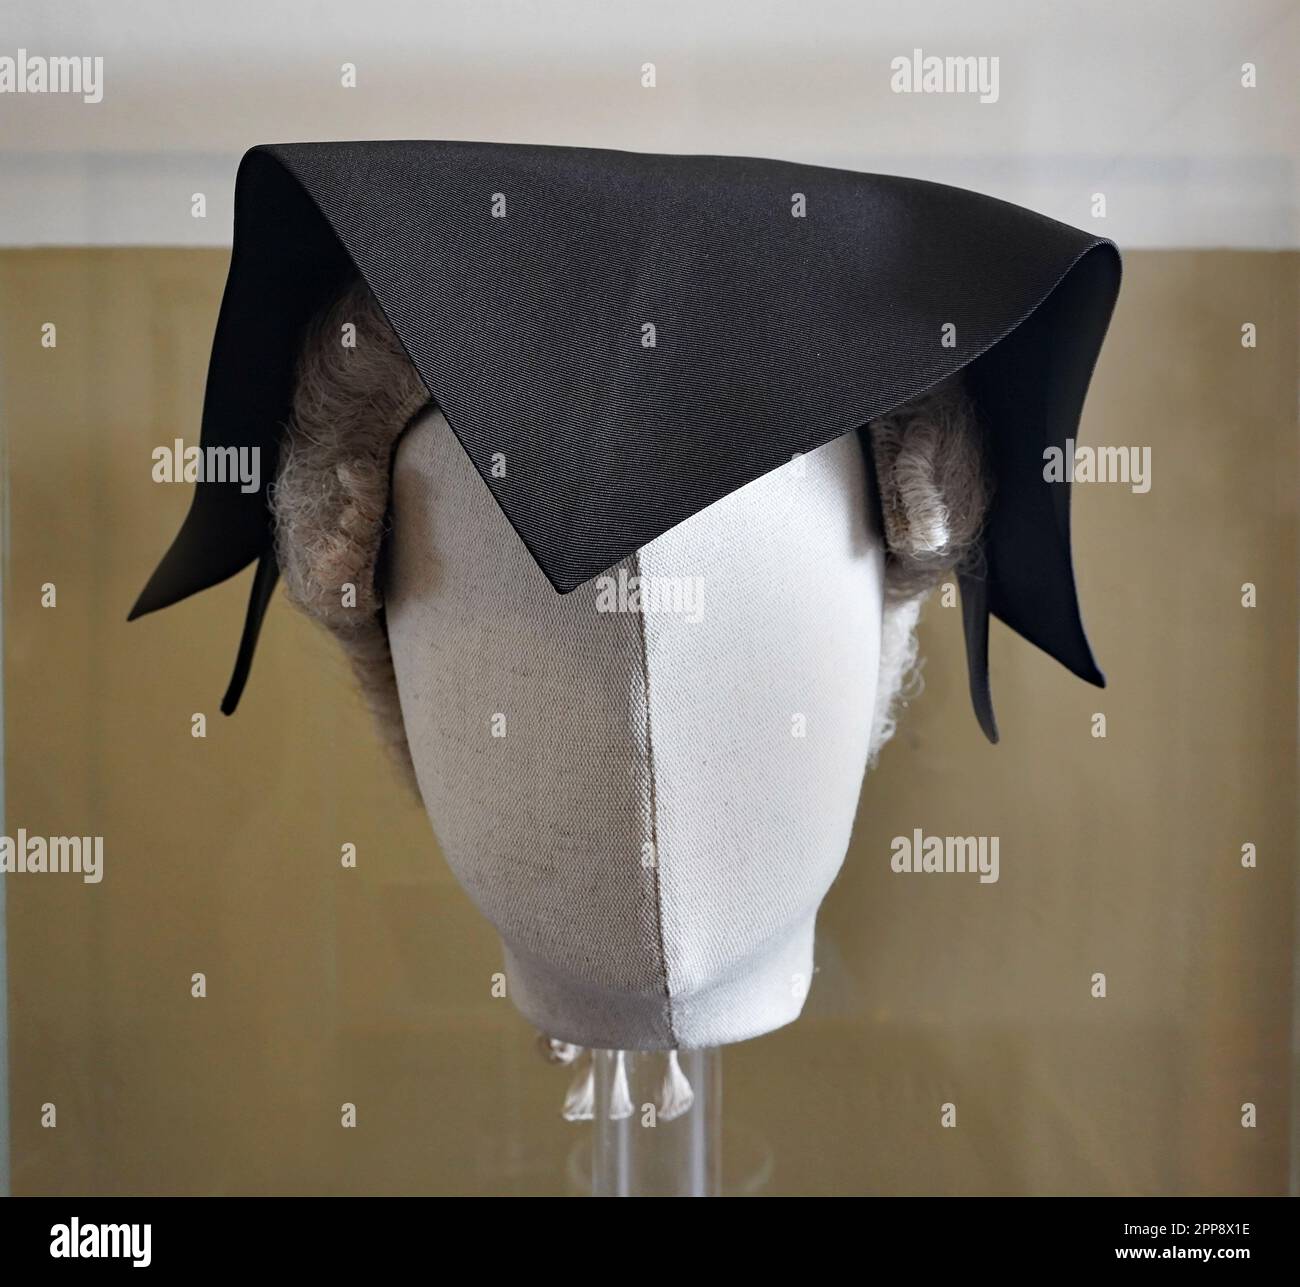 Schwarze Mütze, die traditionell vom Richter getragen wird, der ein Todesurteil ausspricht Stockfoto